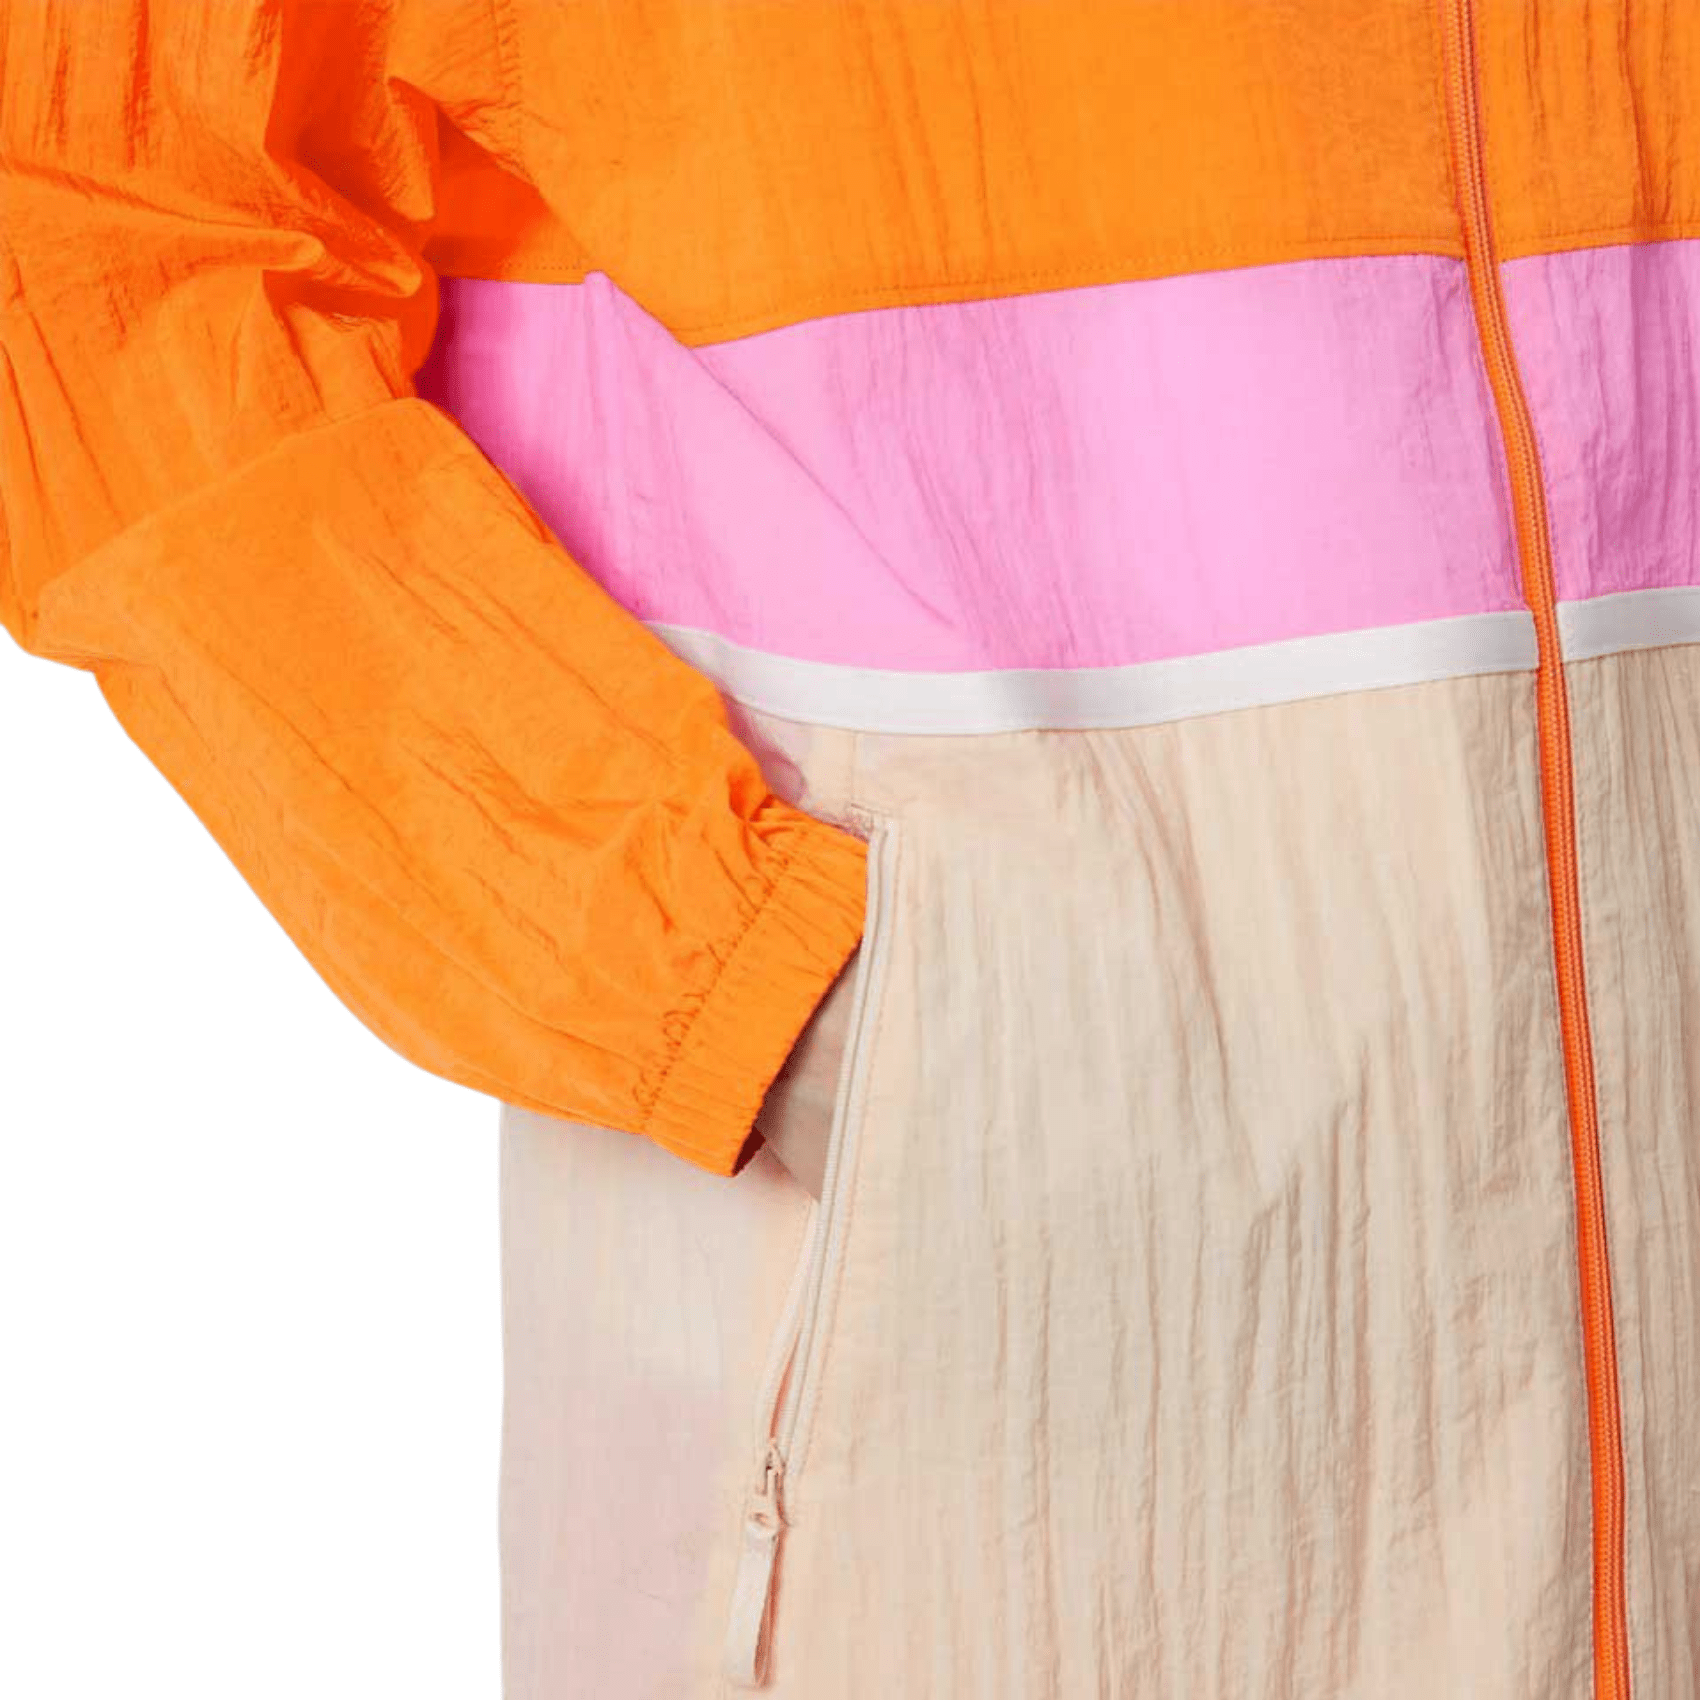 NB ATH Woven JKT - Orange/Pink